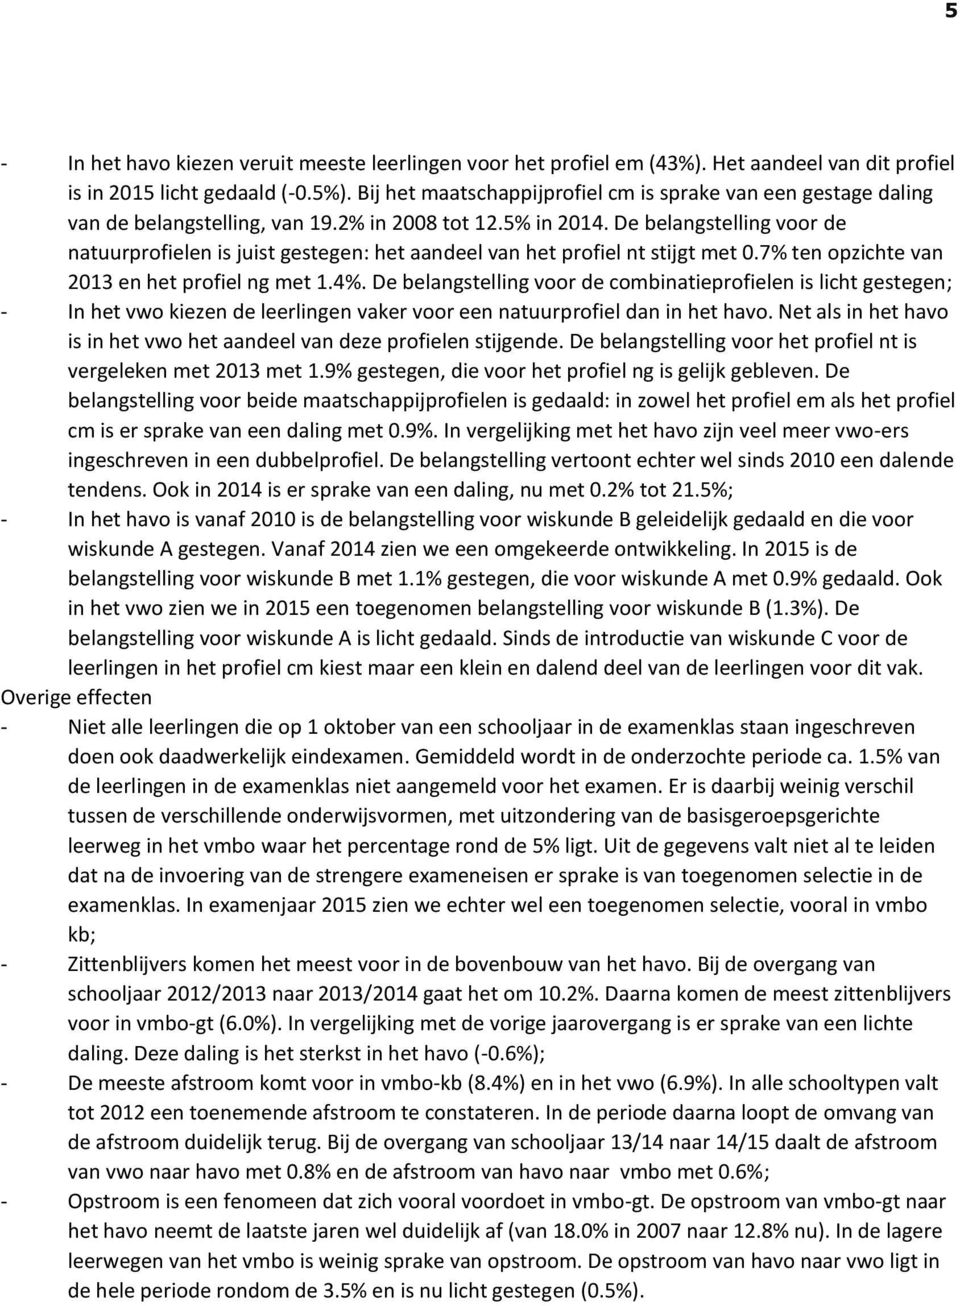 De belangstelling voor de natuurprofielen is juist gestegen: het aandeel van het profiel nt stijgt met 0.7% ten opzichte van 2013 en het profiel ng met 1.4%.